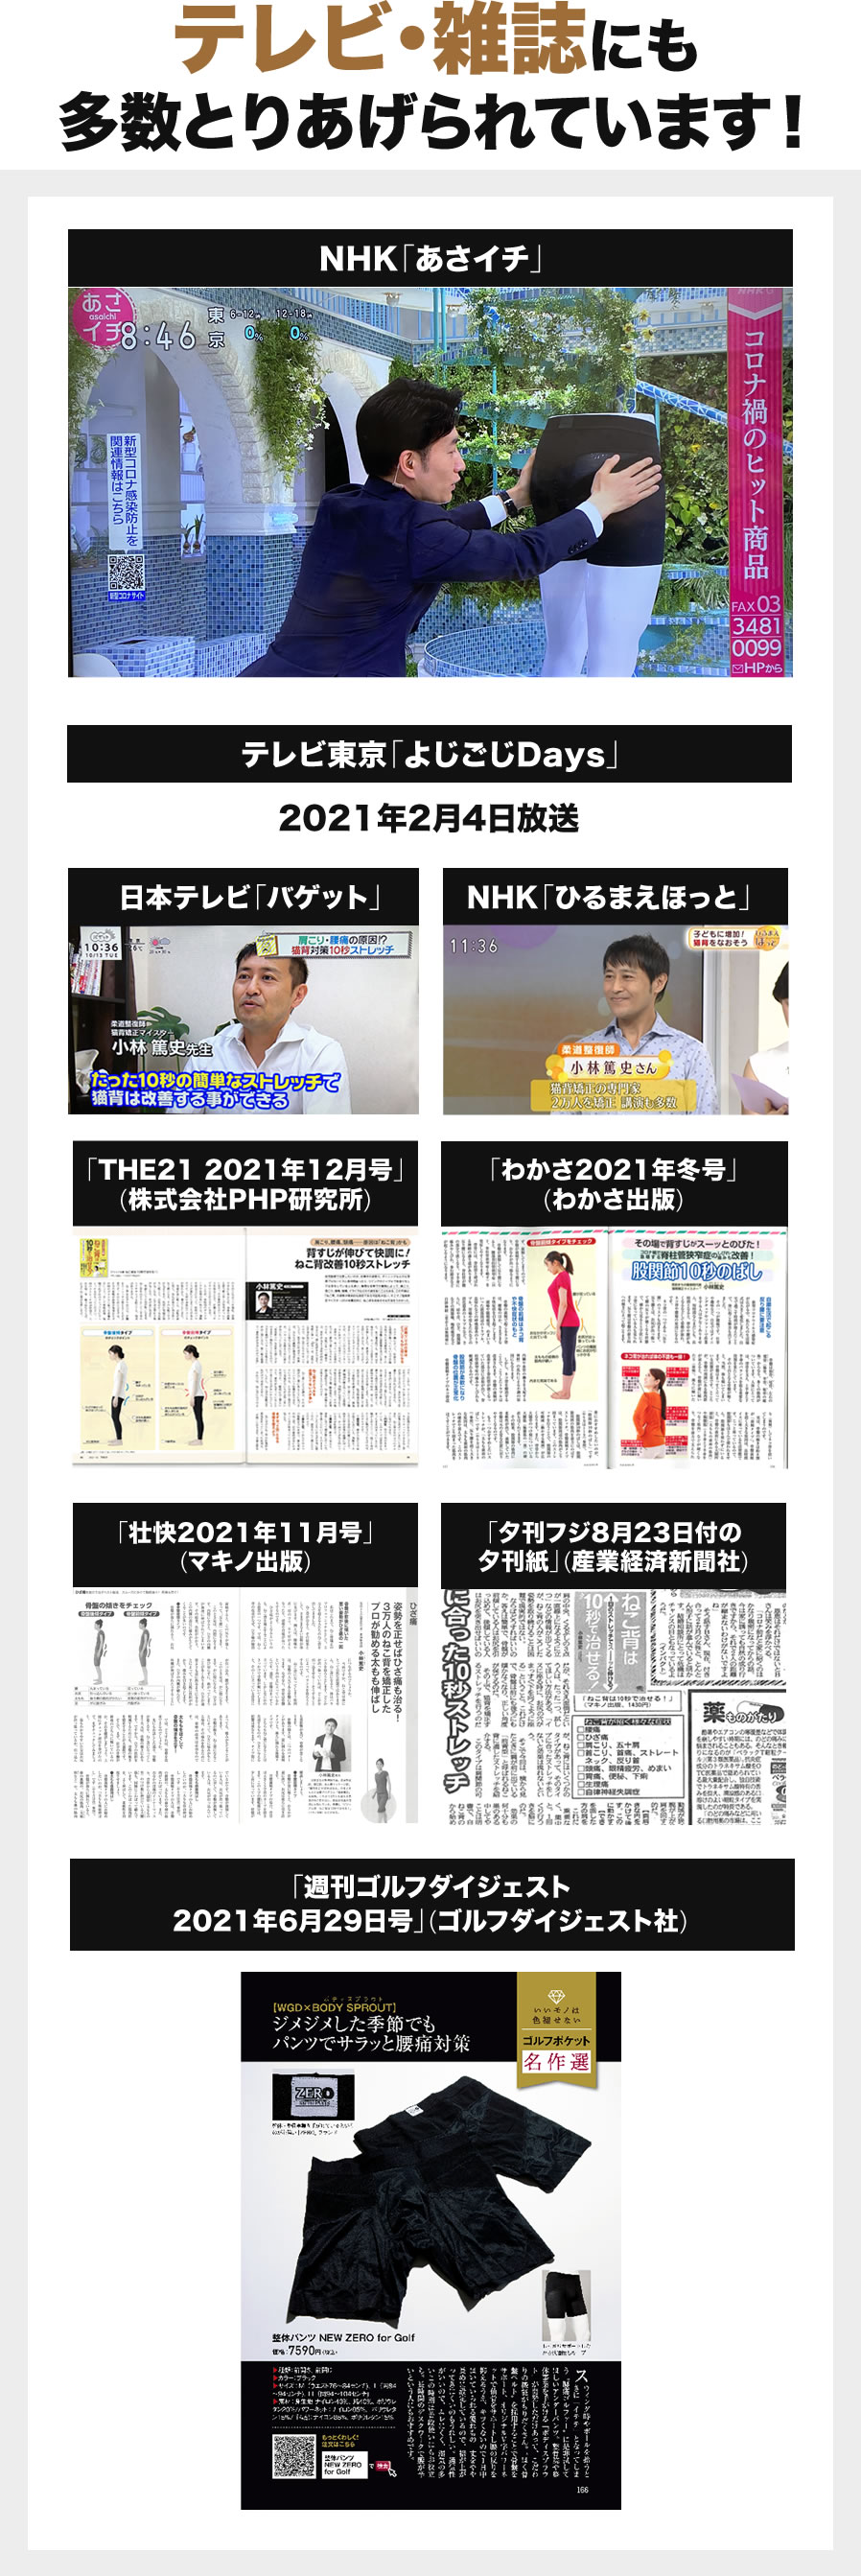 テレビ・雑誌にも多数取り上げられています。NHK「あさイチ」